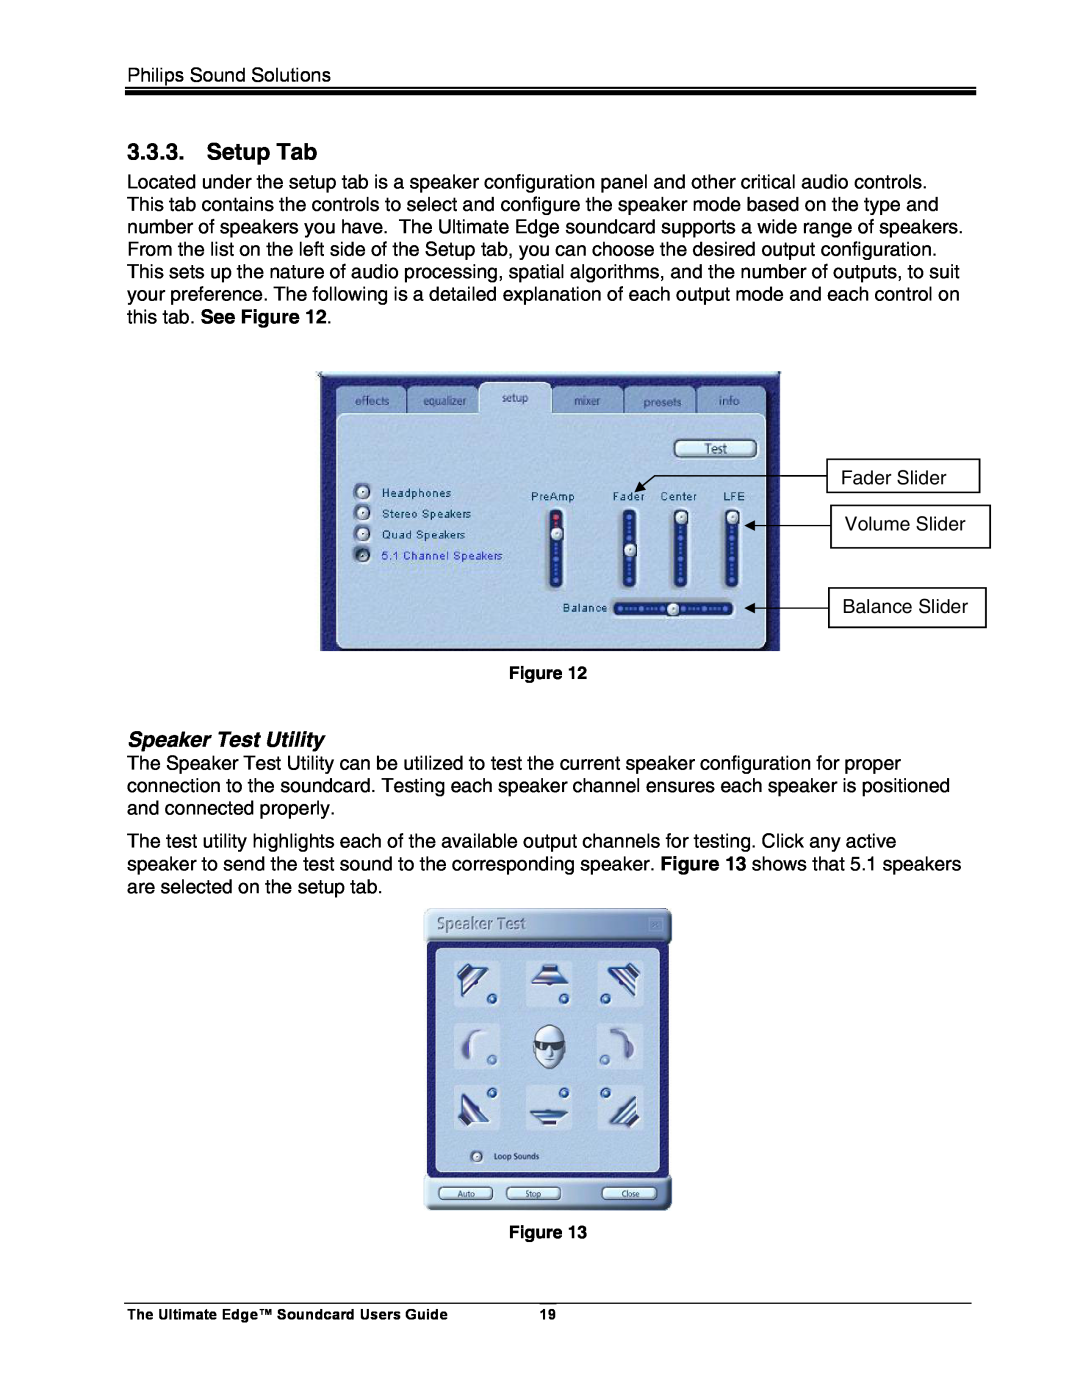 Philips 5.1 manual Setup Tab, Speaker Test Utility 